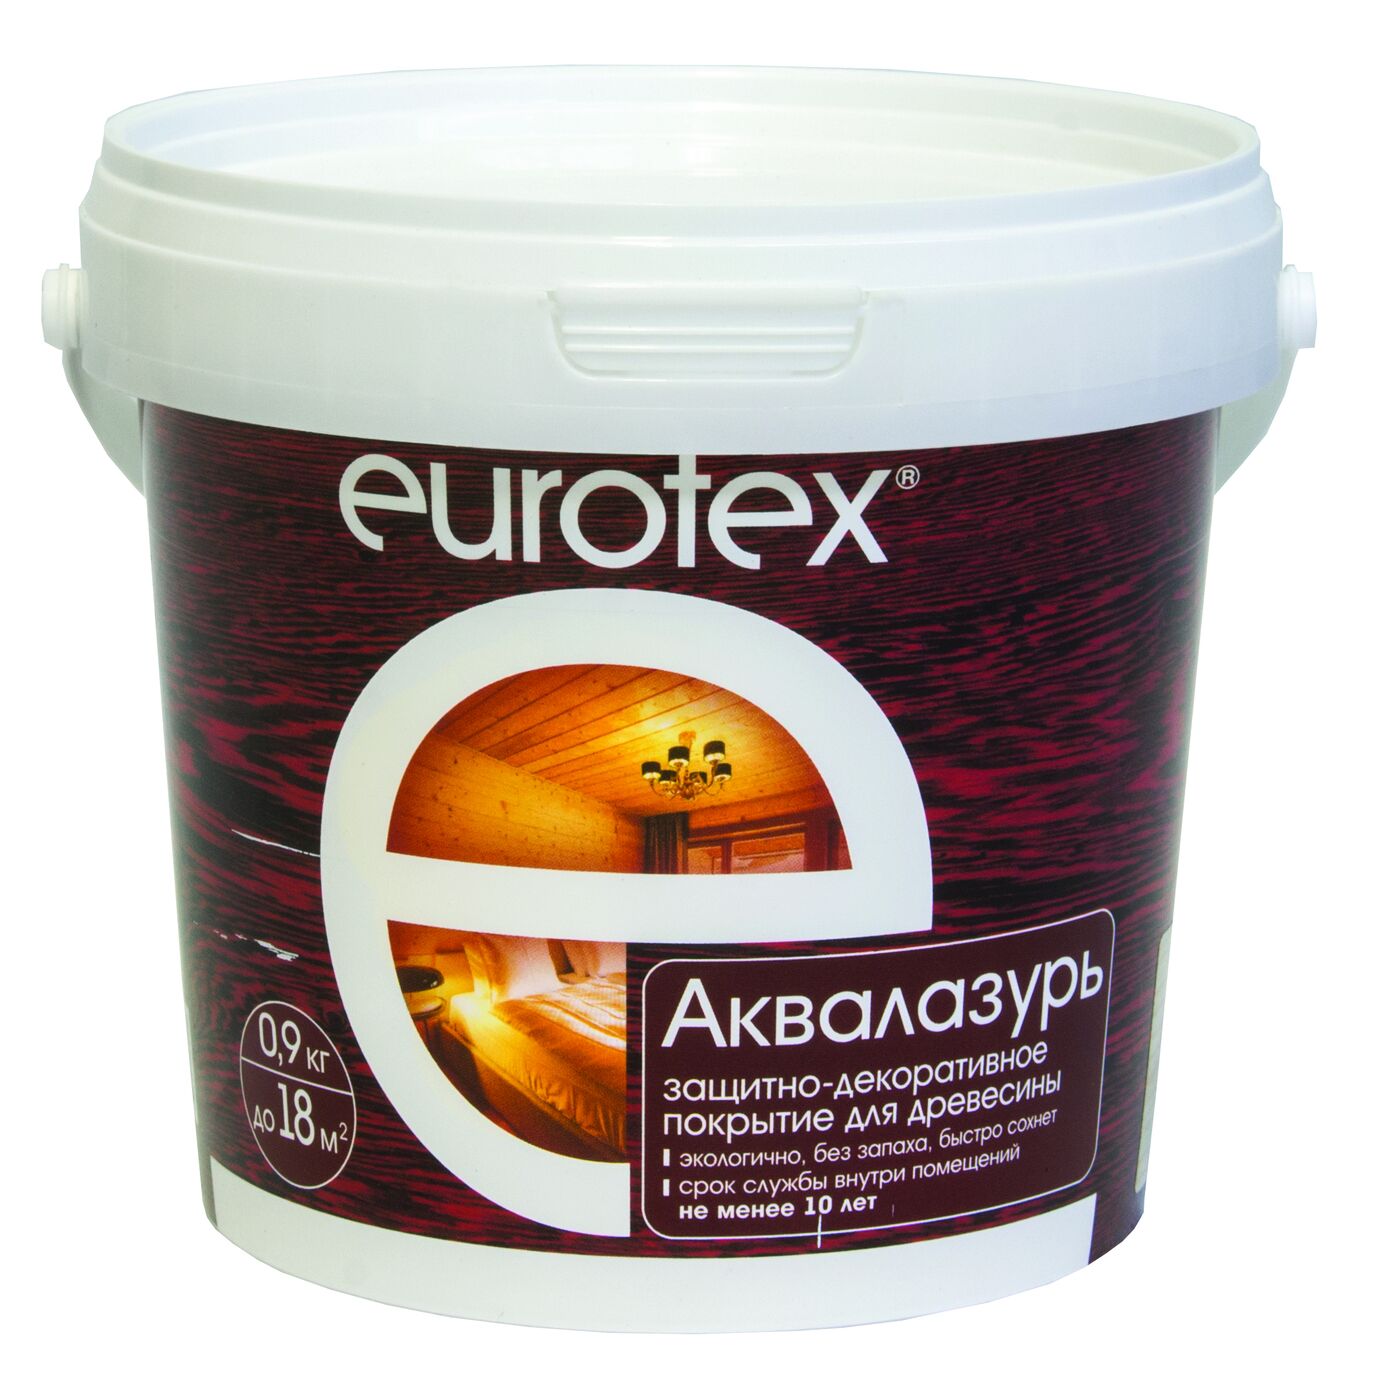 EUROTEX Аквалазурь белый, дуб, полисандр, сосна, канадский орех 0,9 л.